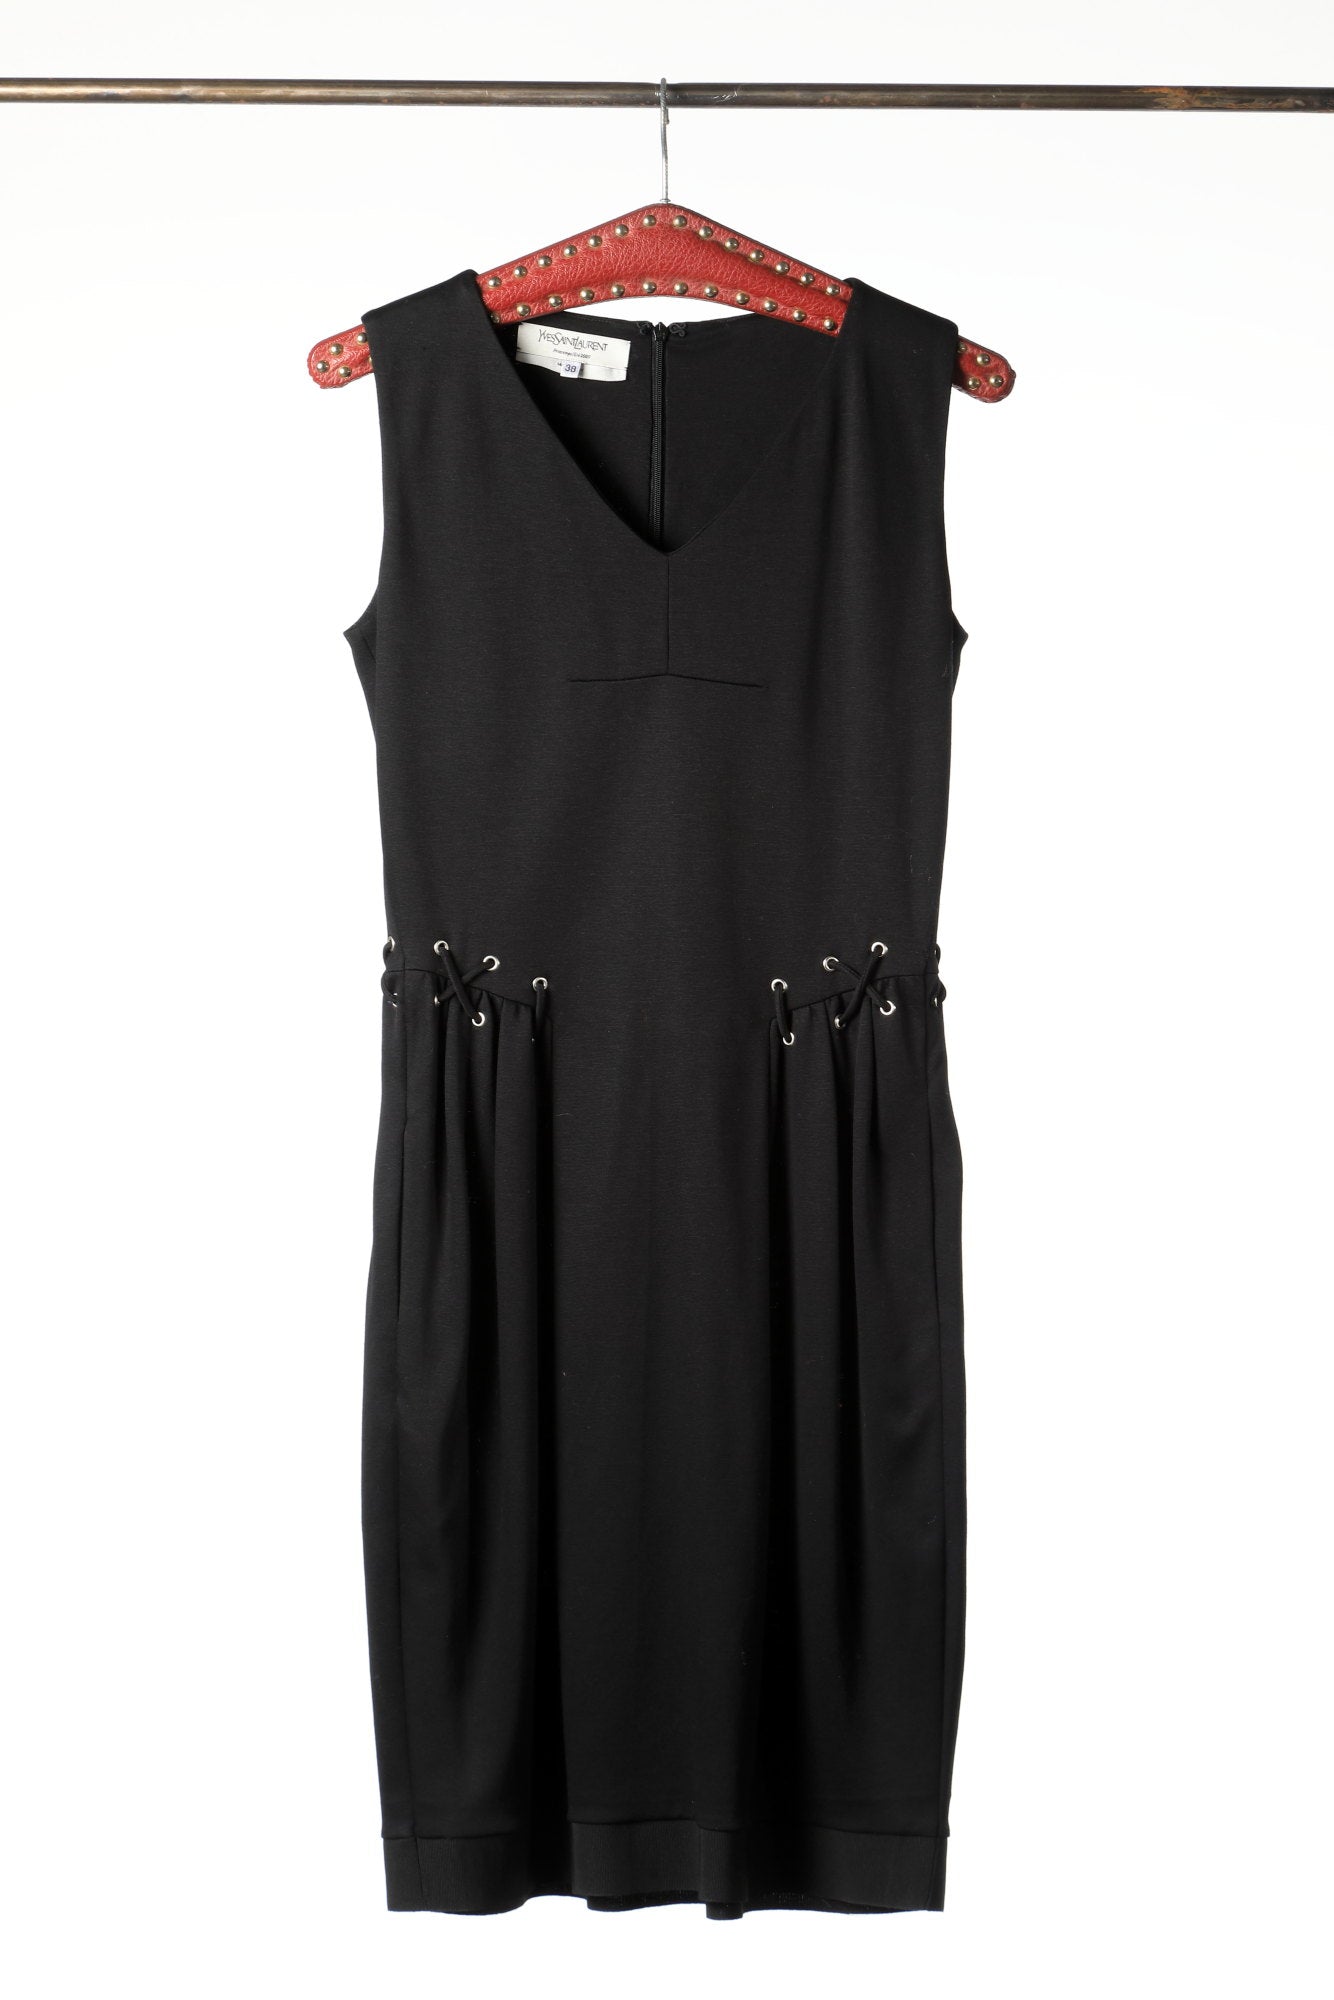 Yves Saint Laurent Spring-Summer 2009 dress